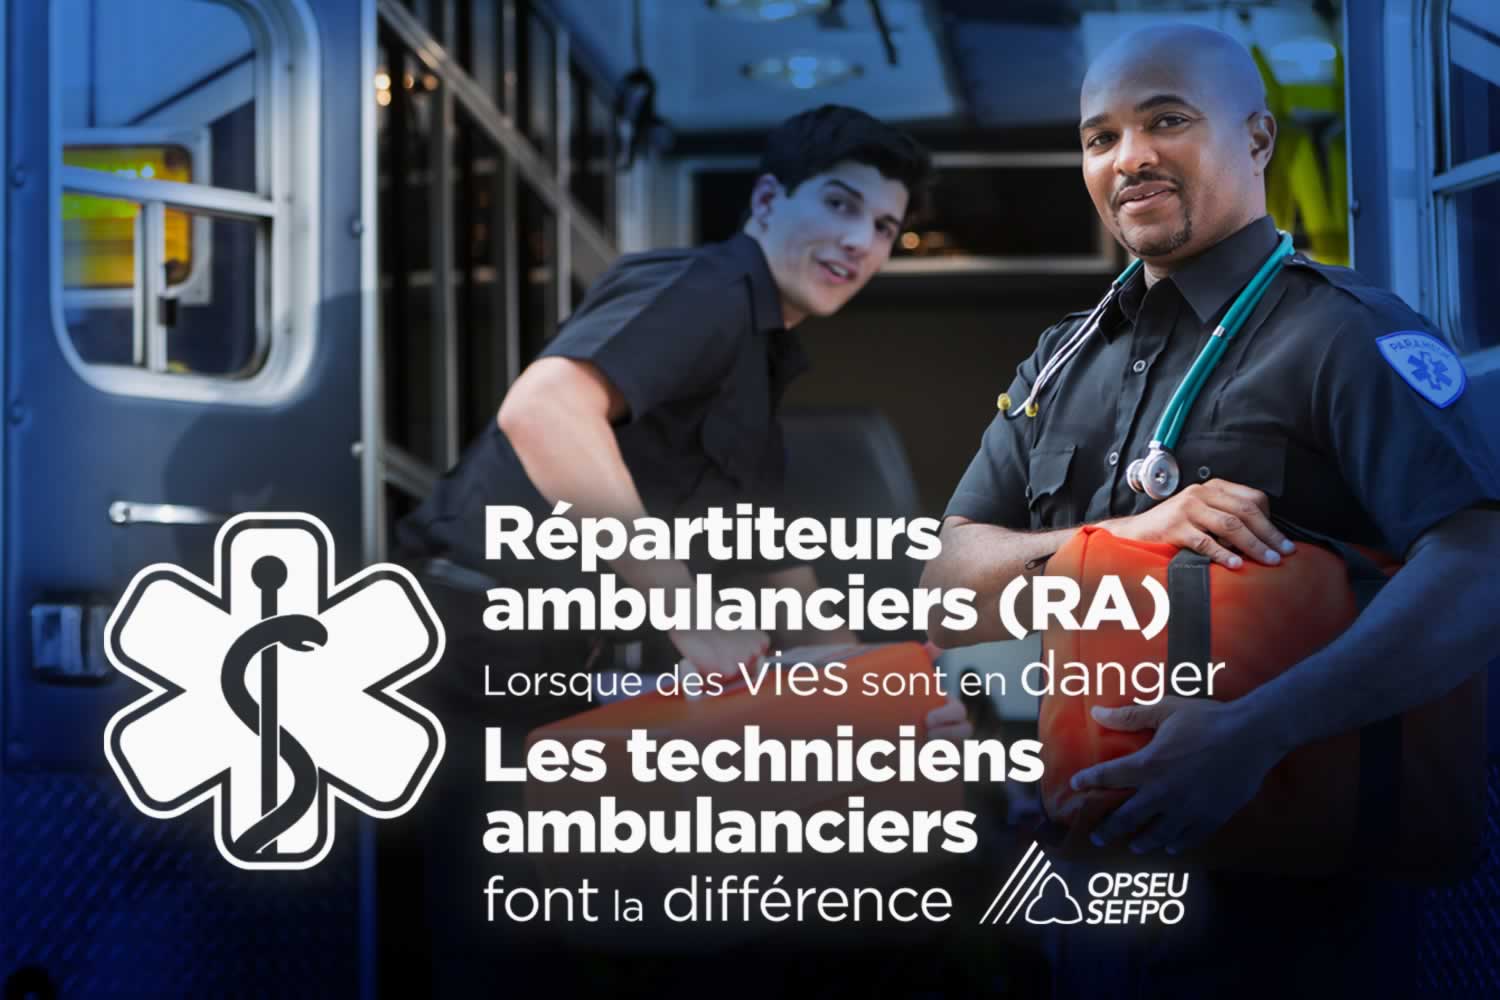 Repartiteurs ambulanciers (RA). Lorsque des vies sont en danger. Les techniciens ambulanciers font la difference